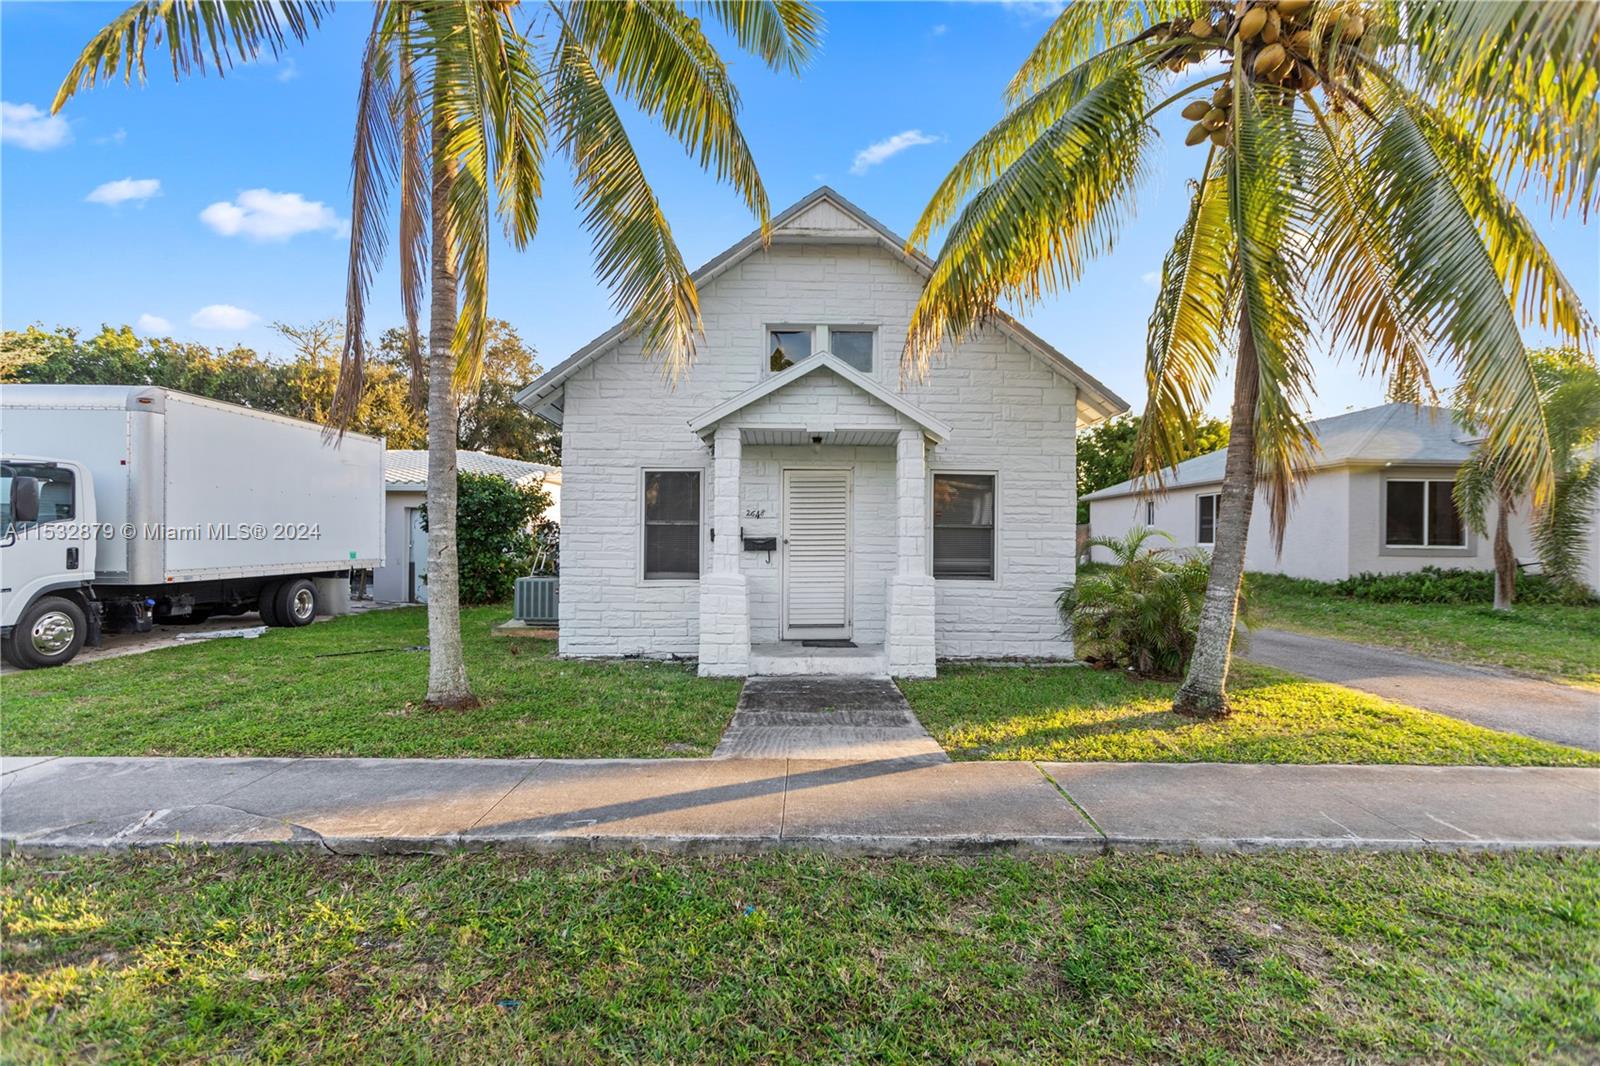 Rental Property at 2648 Fillmore St St, Hollywood, Broward County, Florida -  - $699,000 MO.